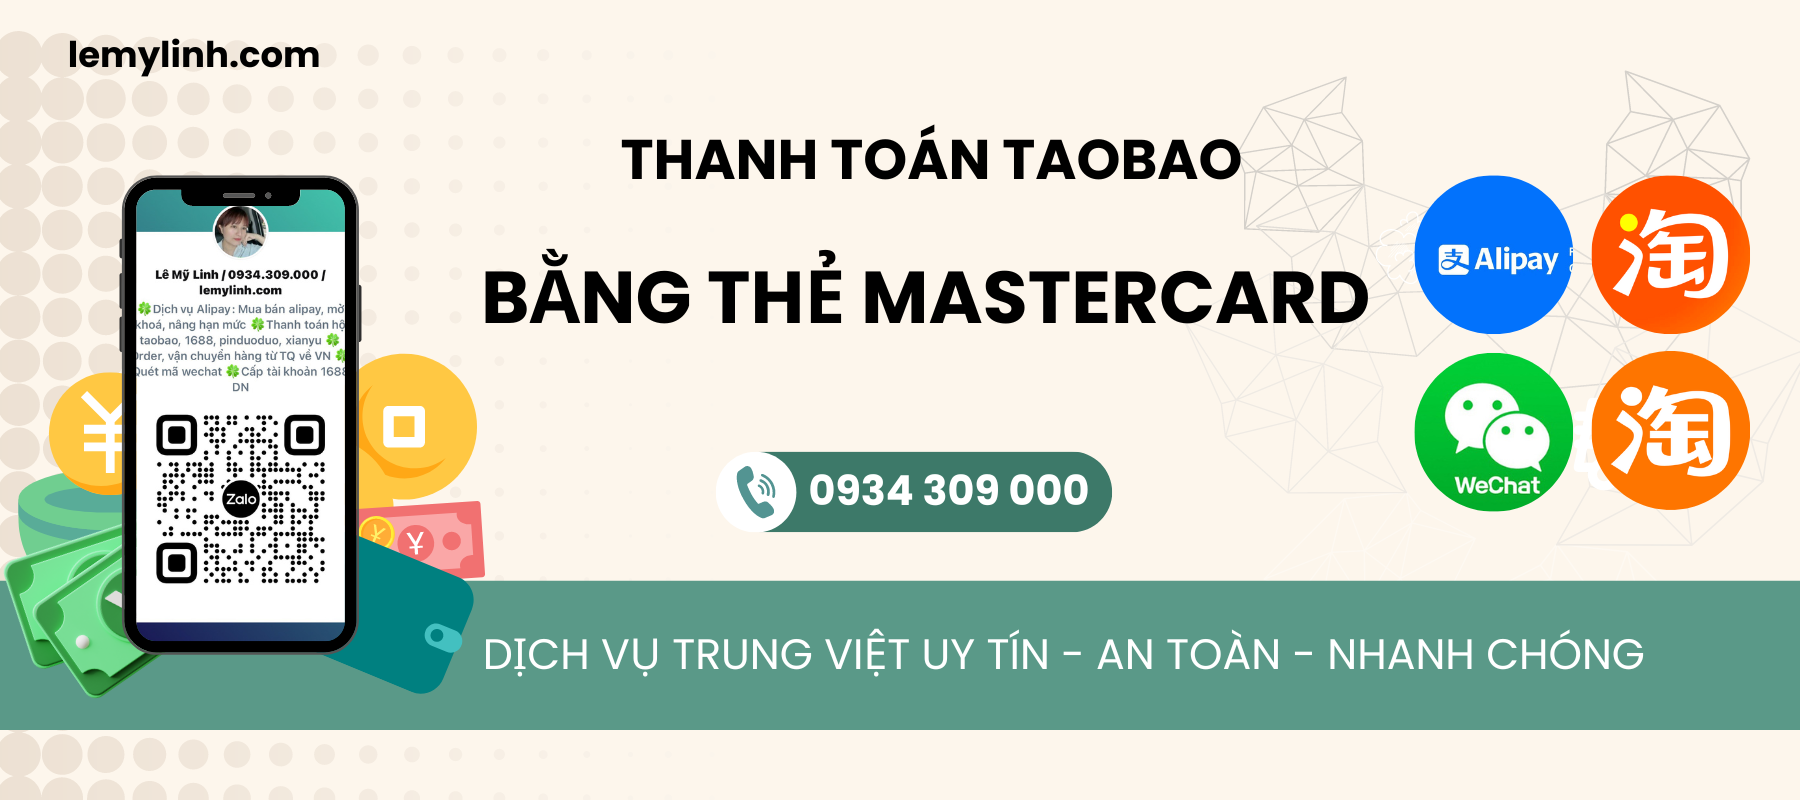 Thanh toán taobao bằng thẻ mastercard